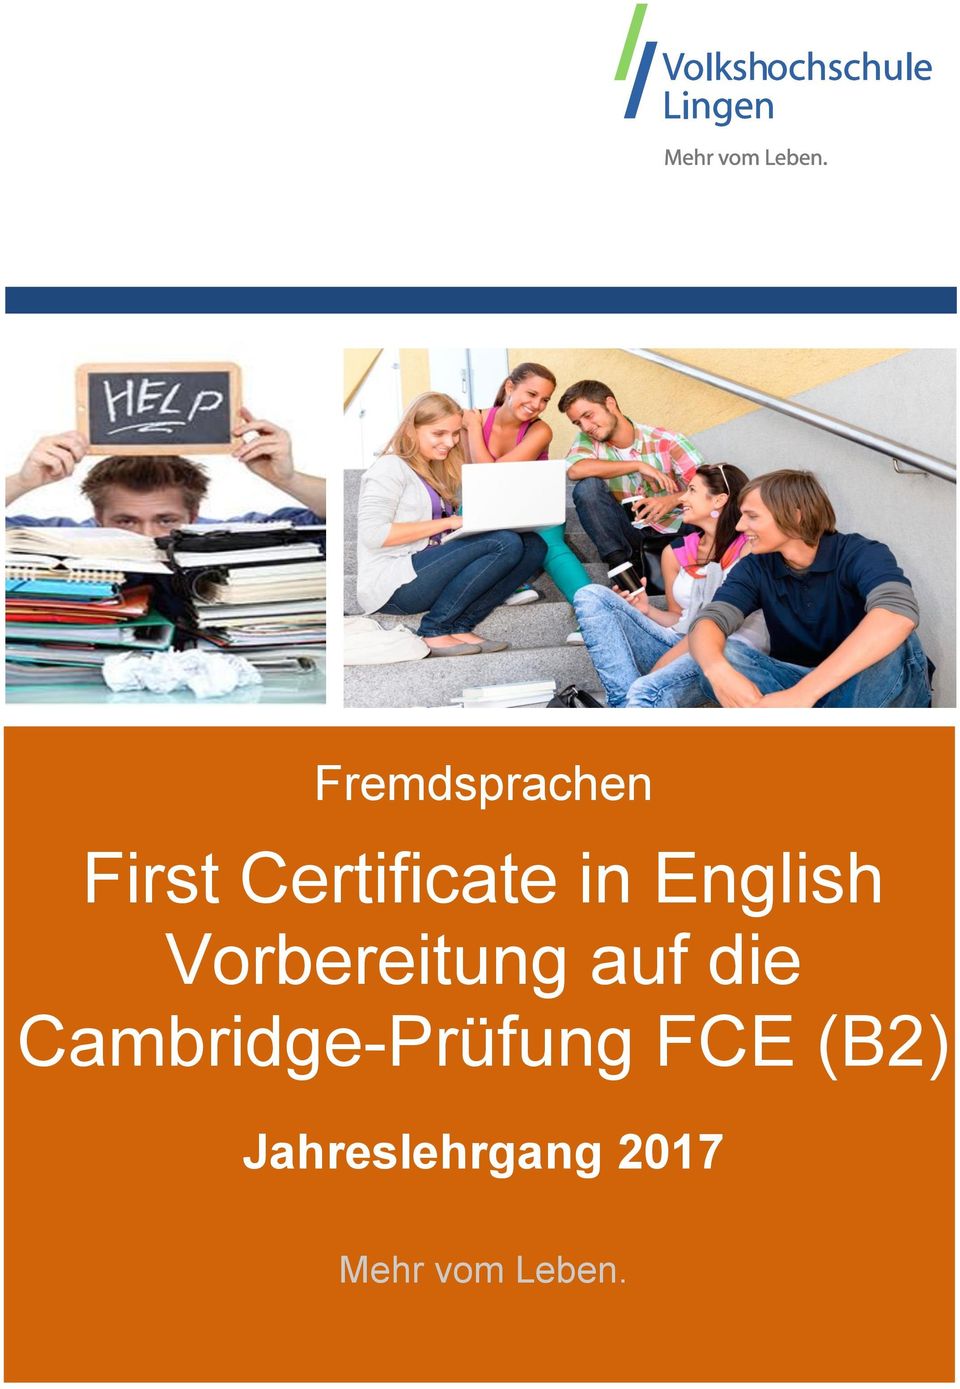 Cambridge-Prüfung FCE (B2)